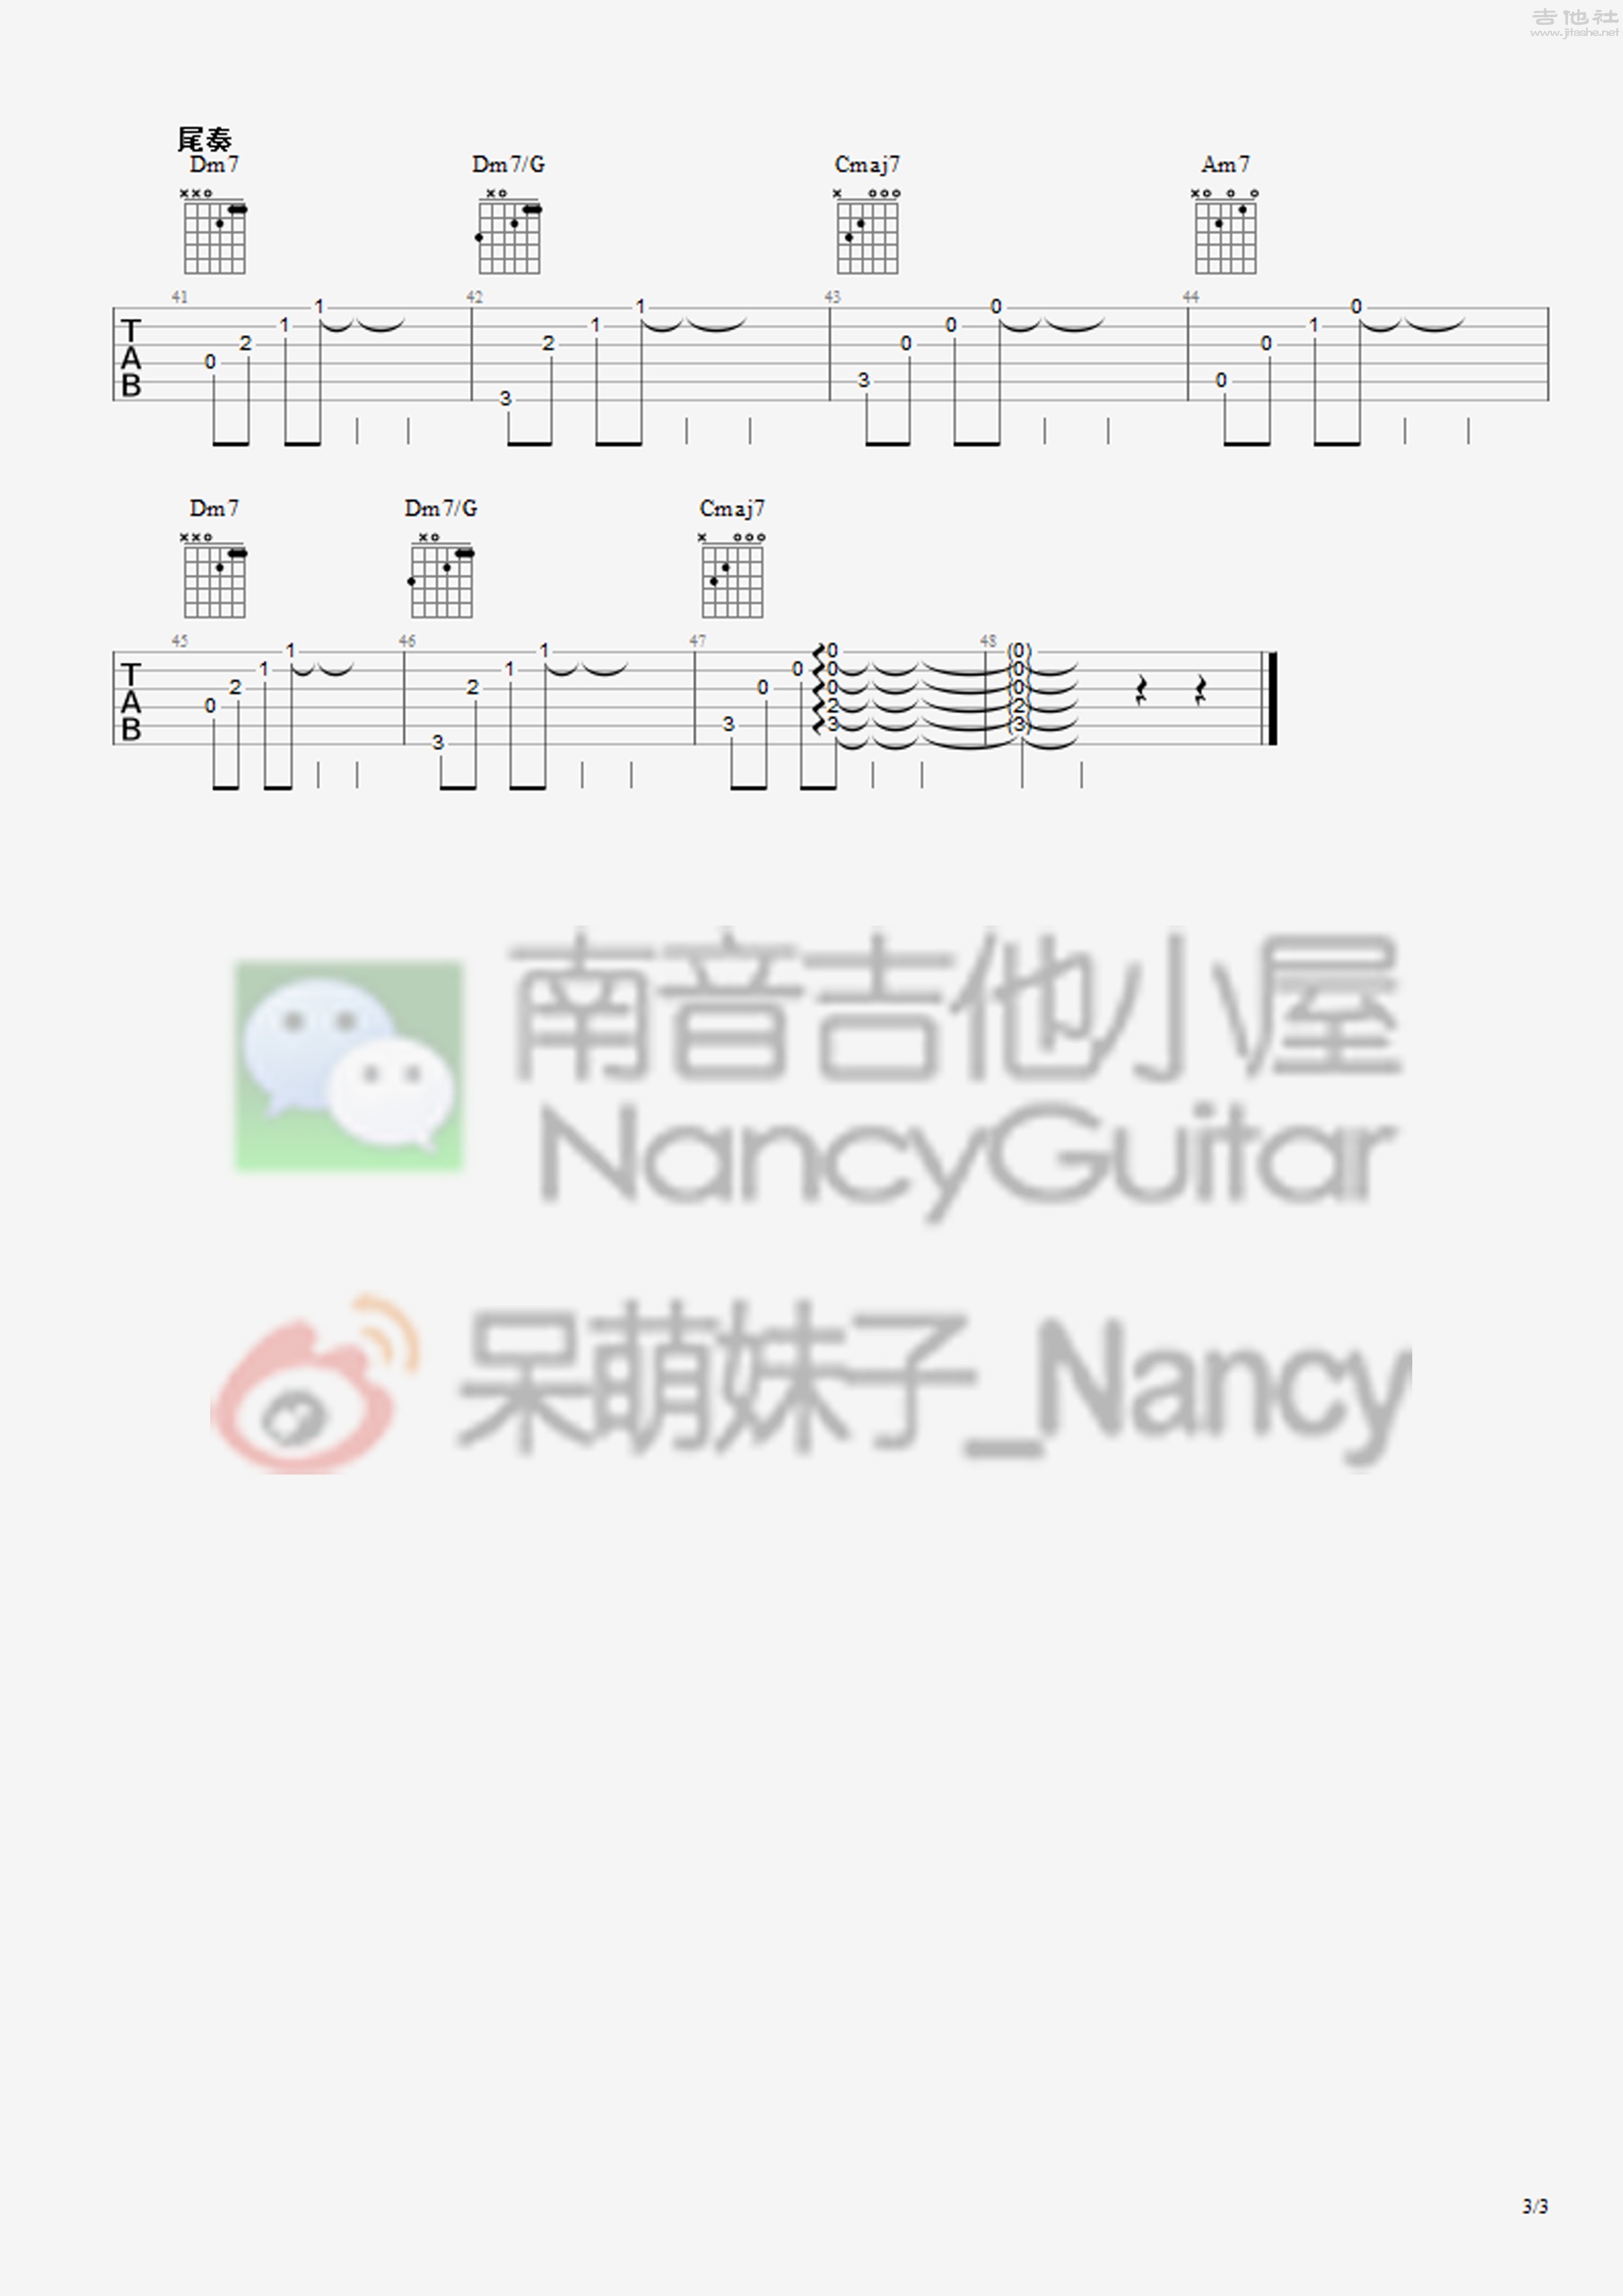 想把我唱给你听（Nancy_南音吉他小屋）吉他谱(图片谱,弹唱,教学)_老狼(王阳)_想把我唱给你听 3.jpg